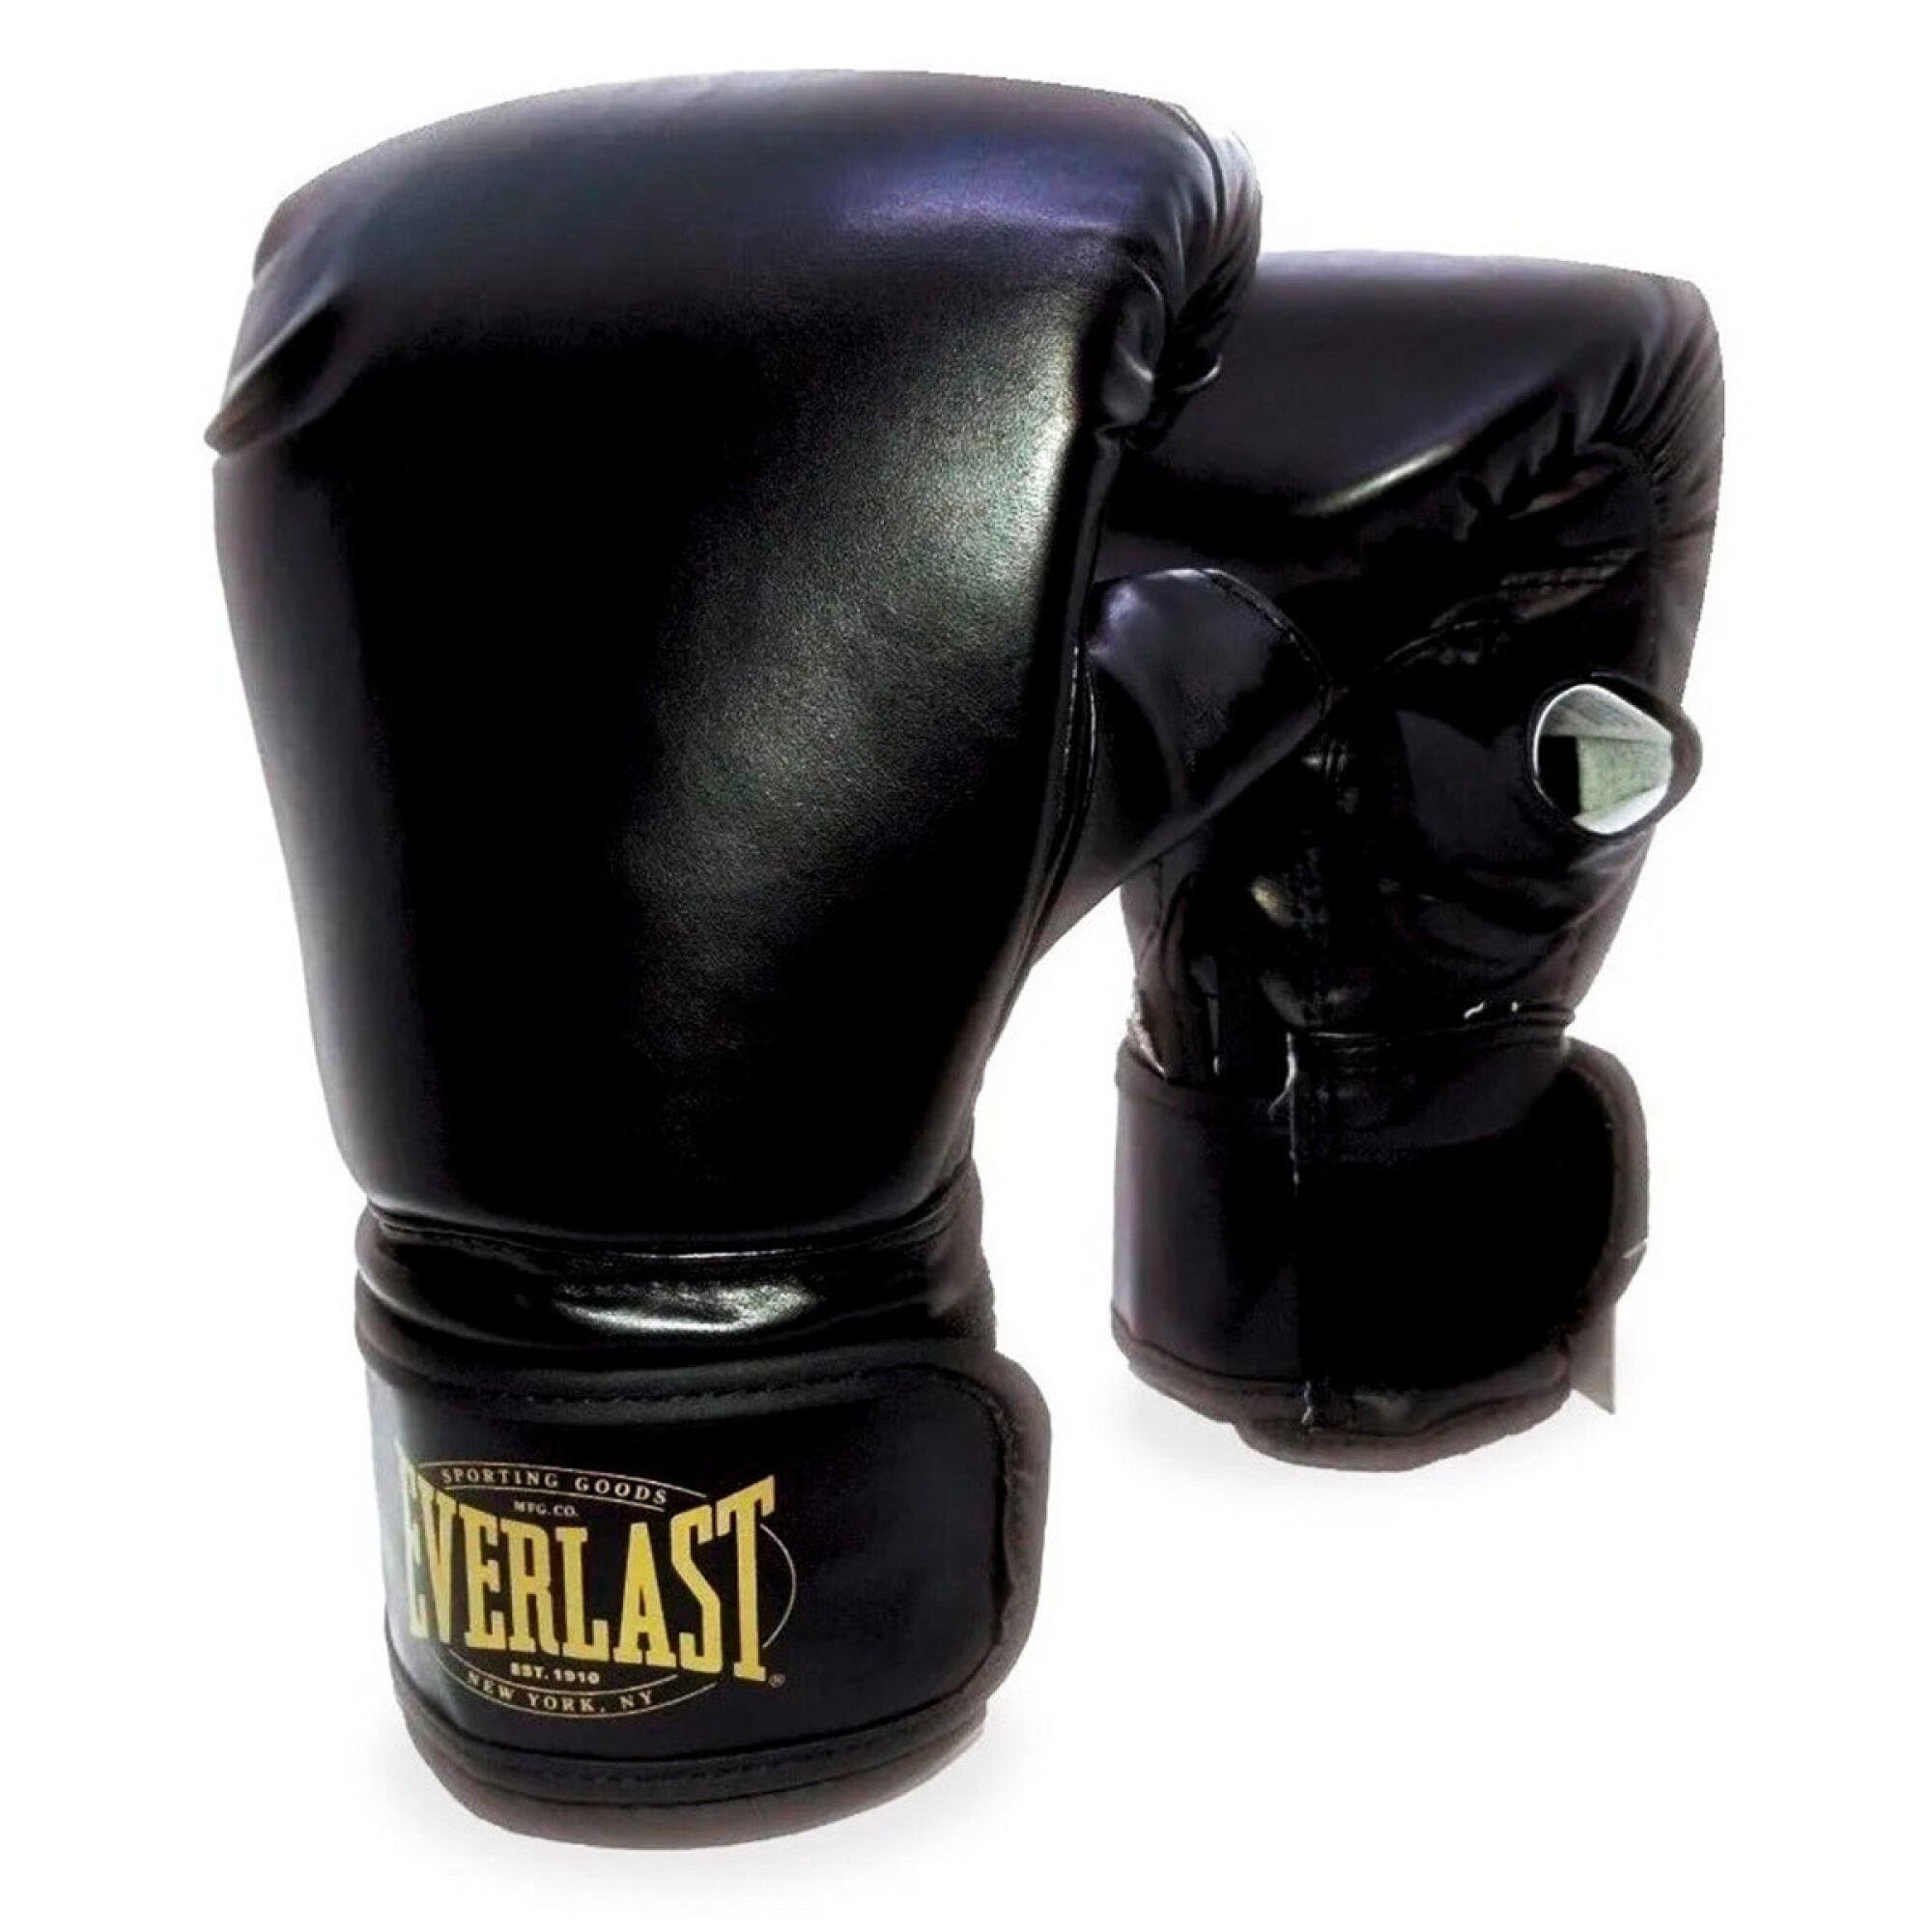 Everlast® Guantes de boxeo para bolsas pesadas (PR)